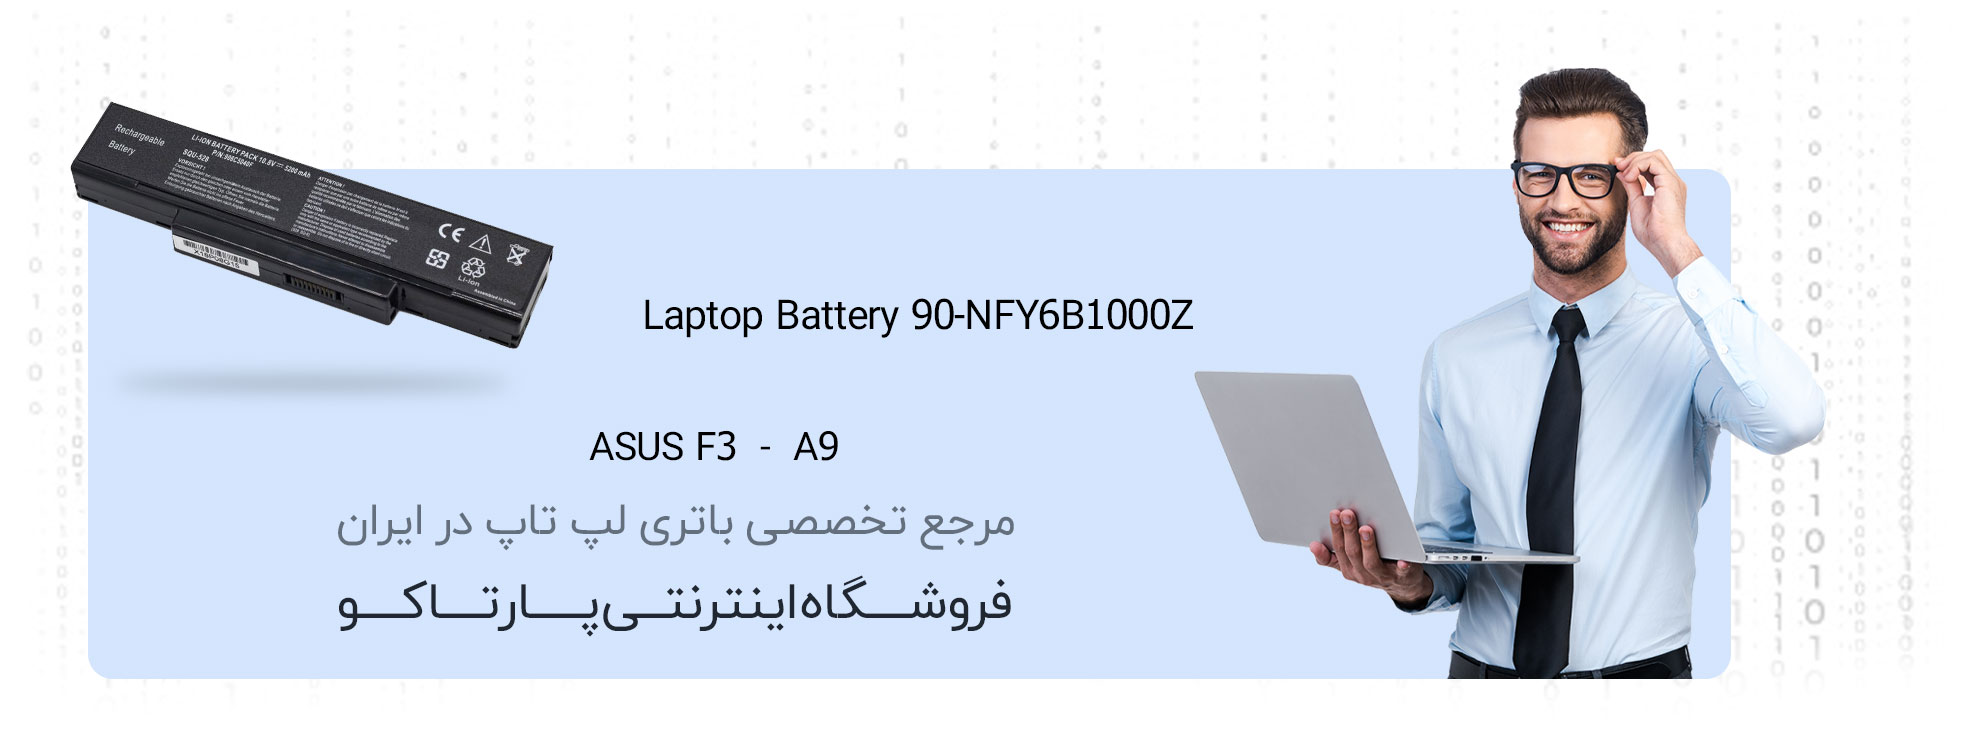 باتری لپ تاپ ایسوس f3